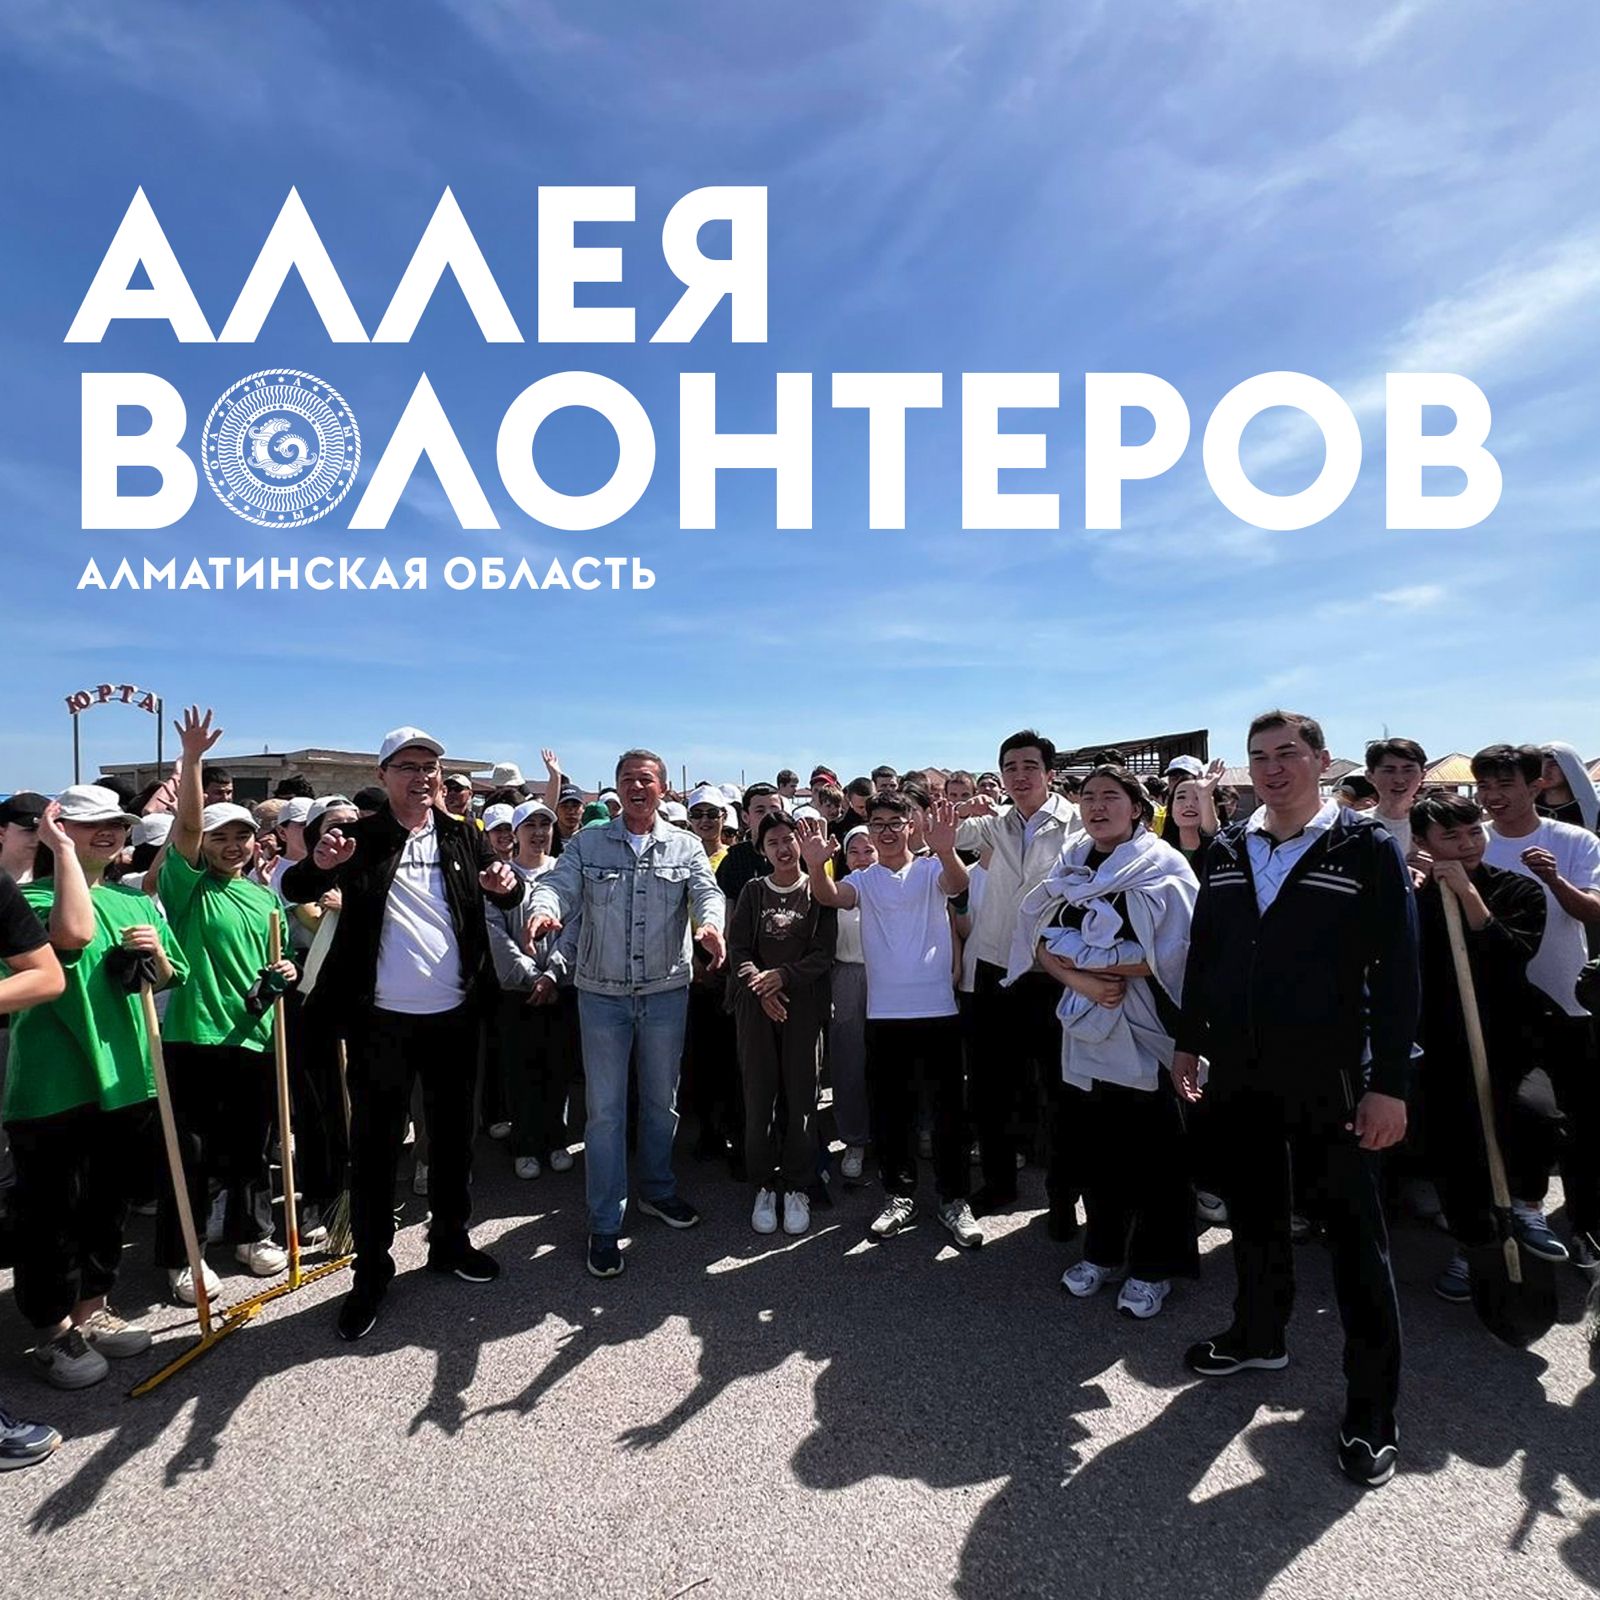 Аллея волонтеров появилась в Алматинской области